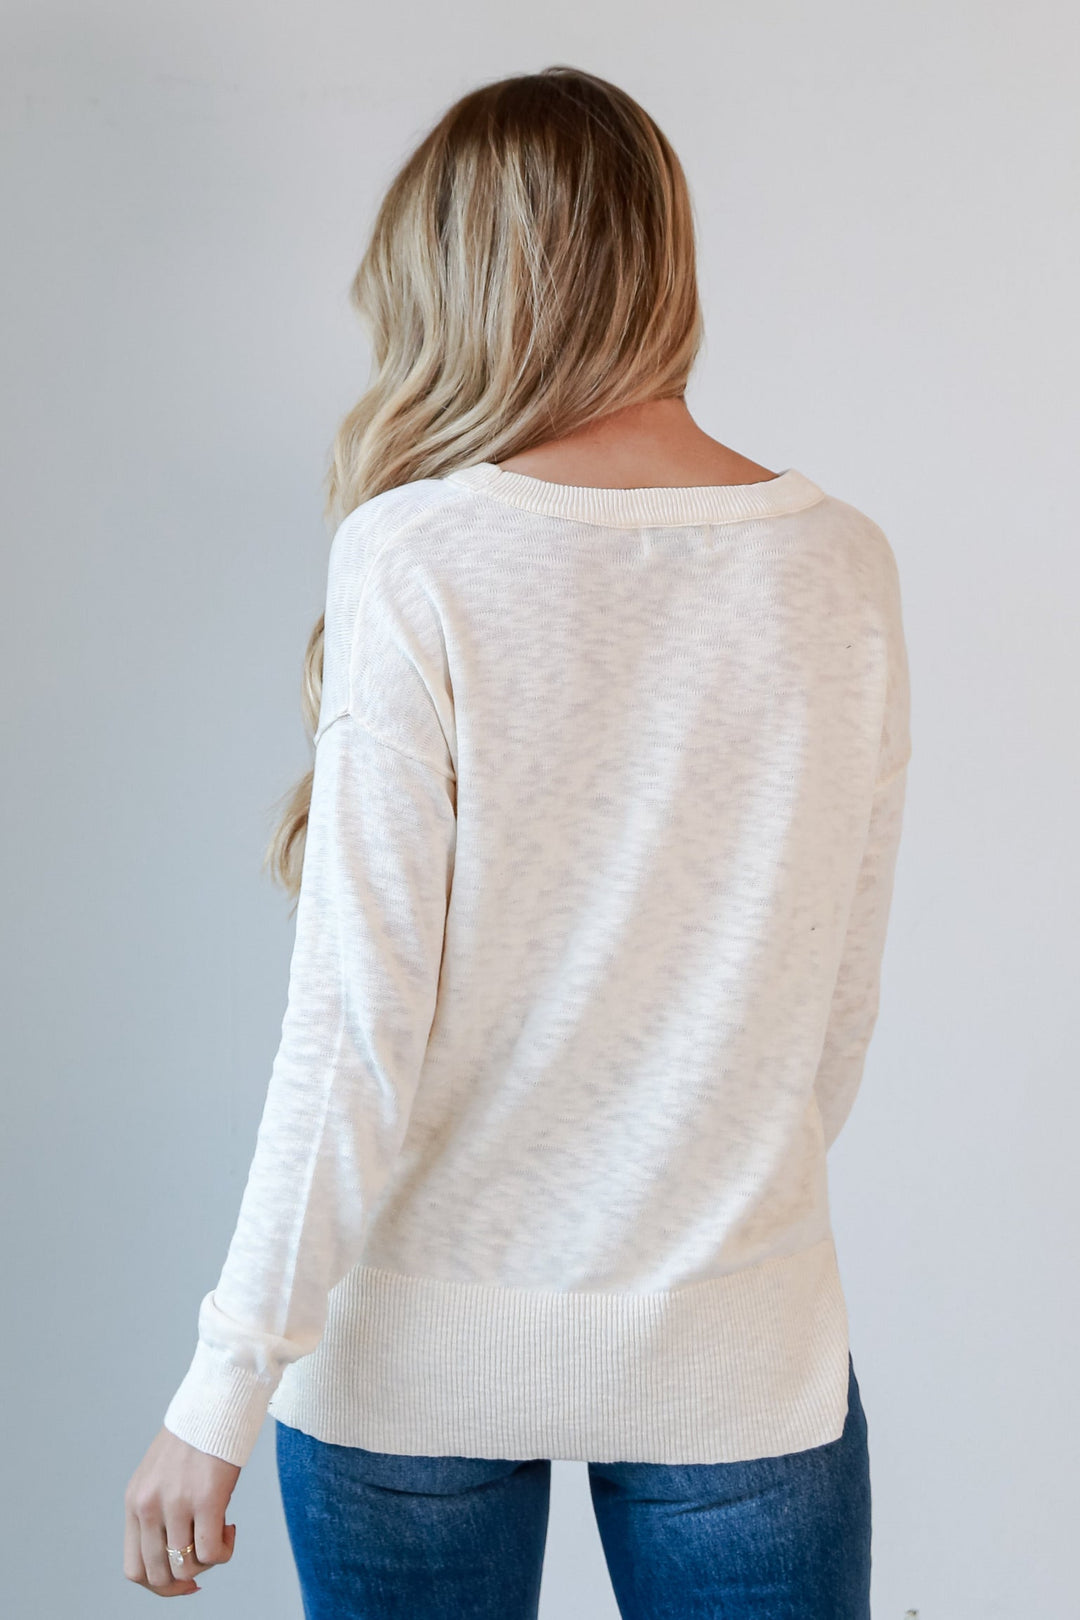 white knit top